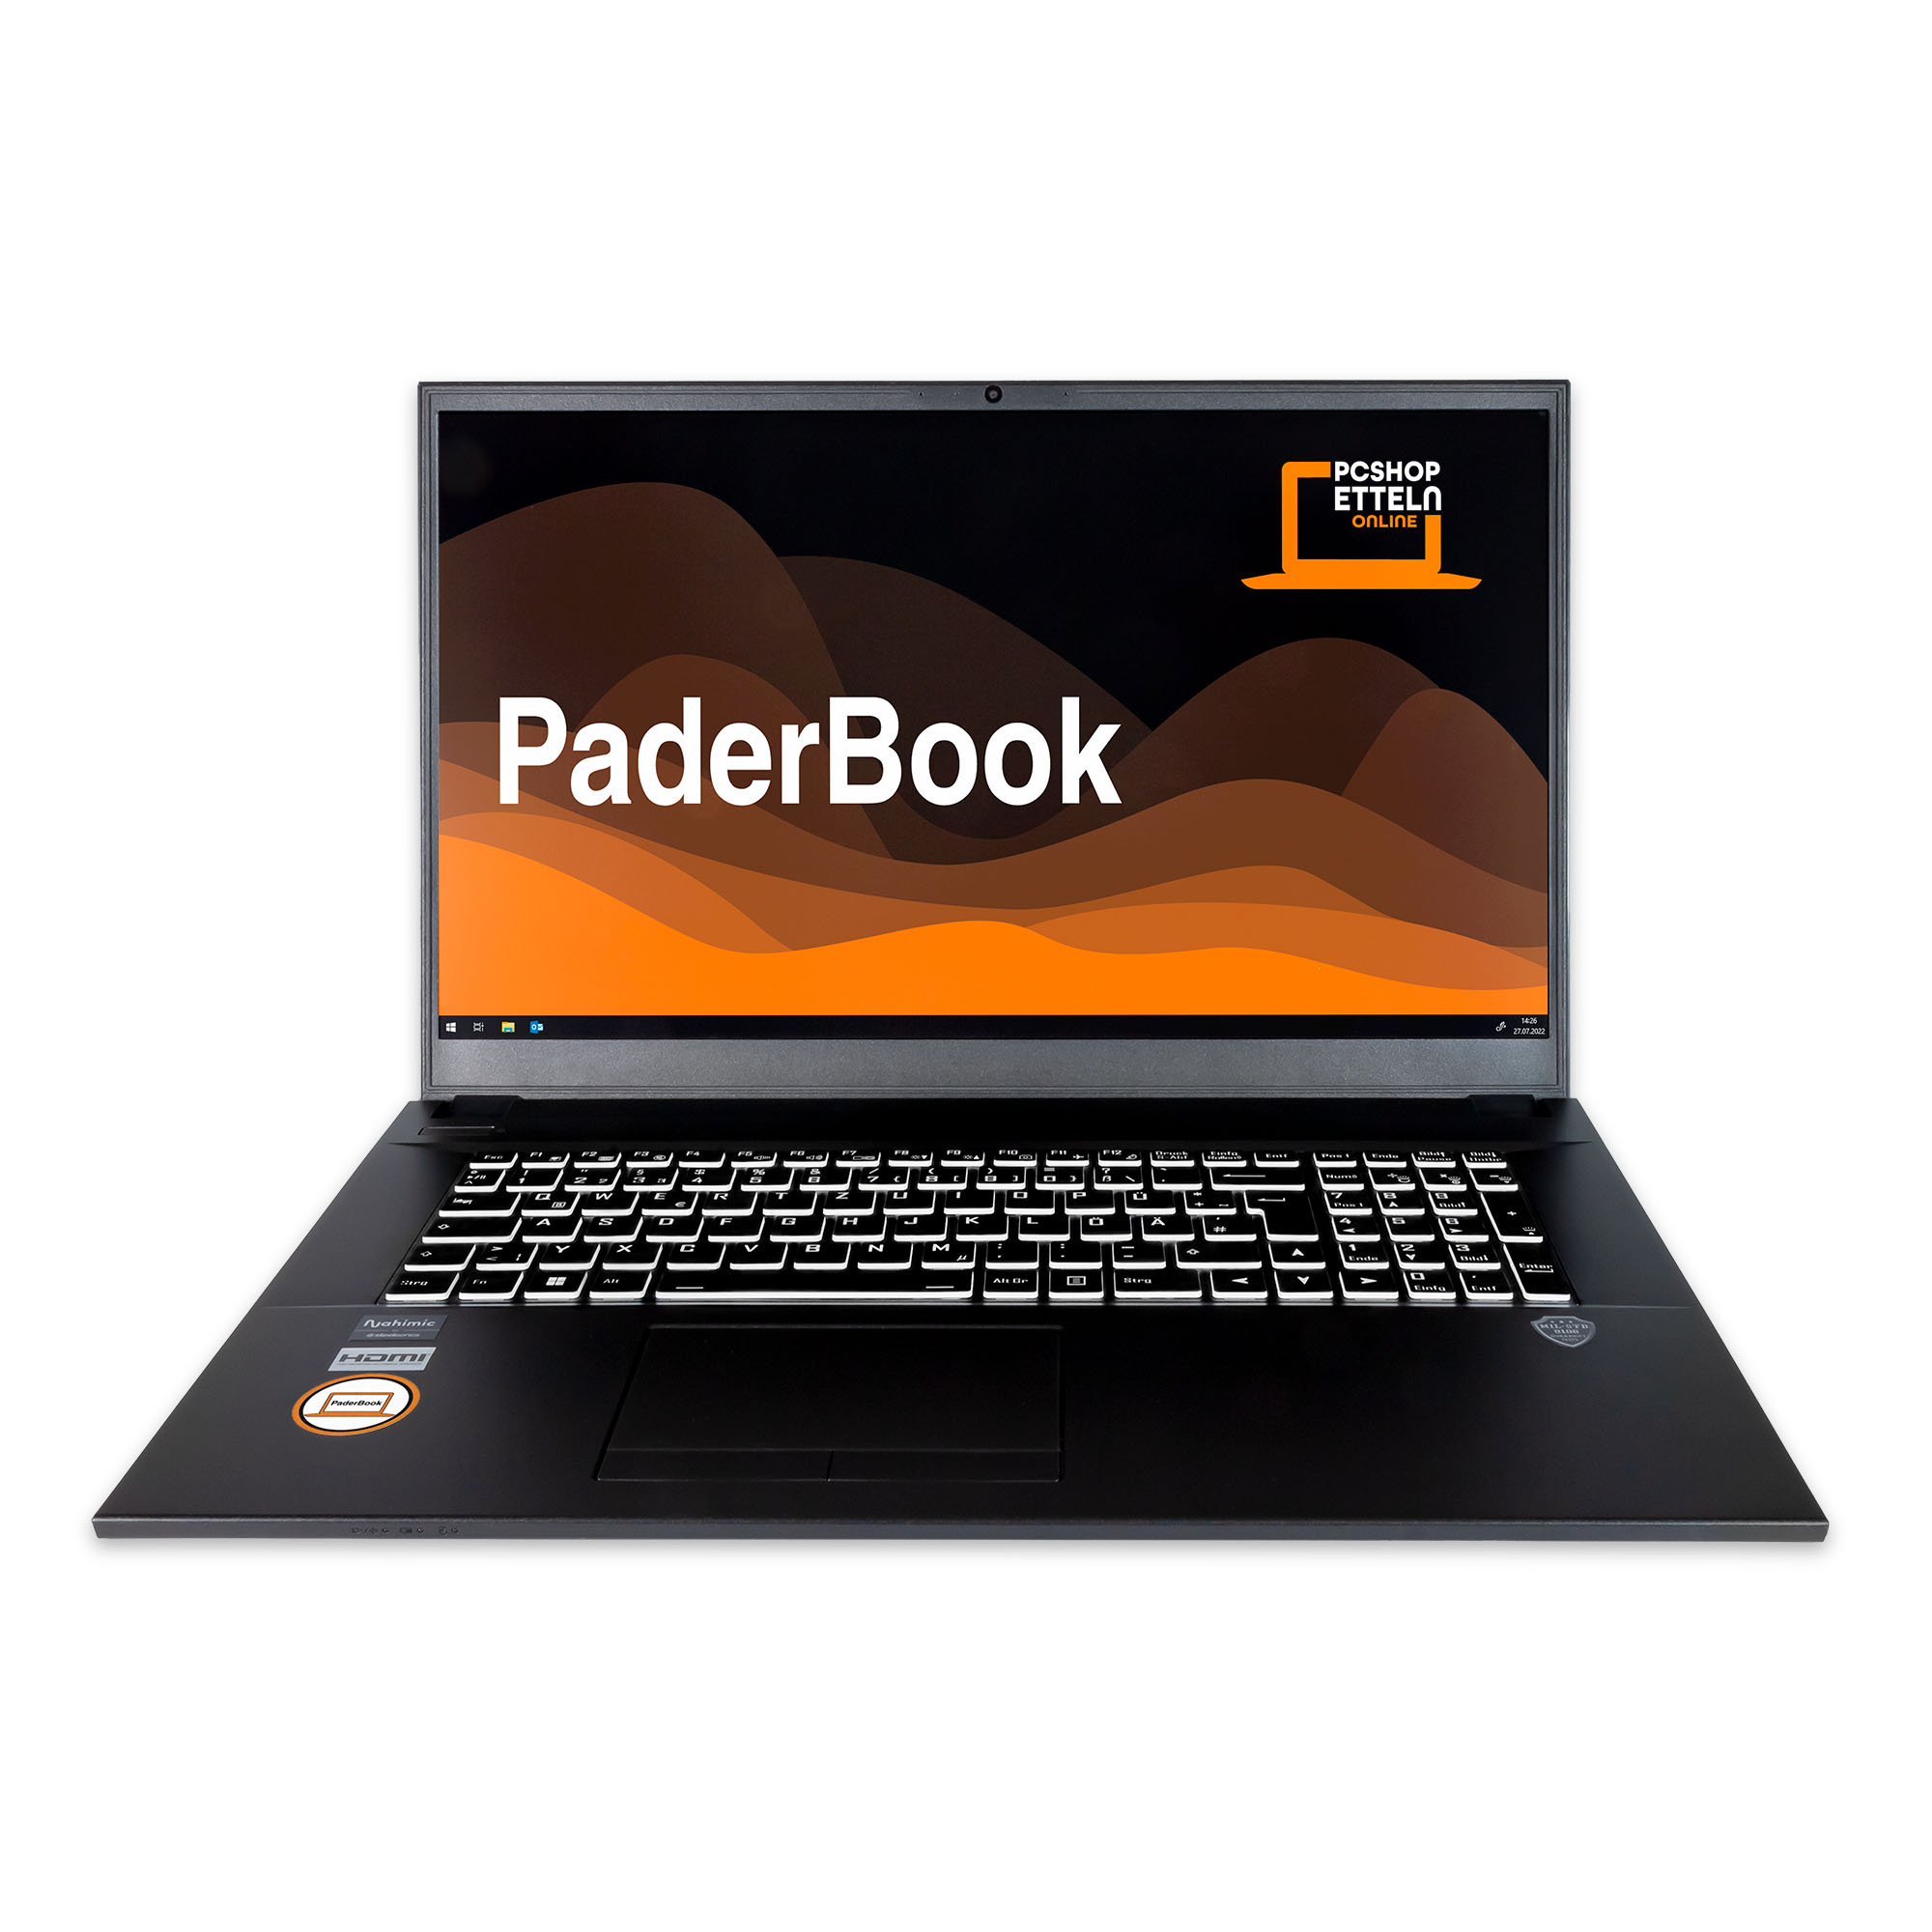 GB Basic PADERBOOK i77, RAM, 500 16 2021 fertig Notebook Zoll GB 17,3 SSD, Schwarz Pro, installiert Display, und aktiviert, Office mit